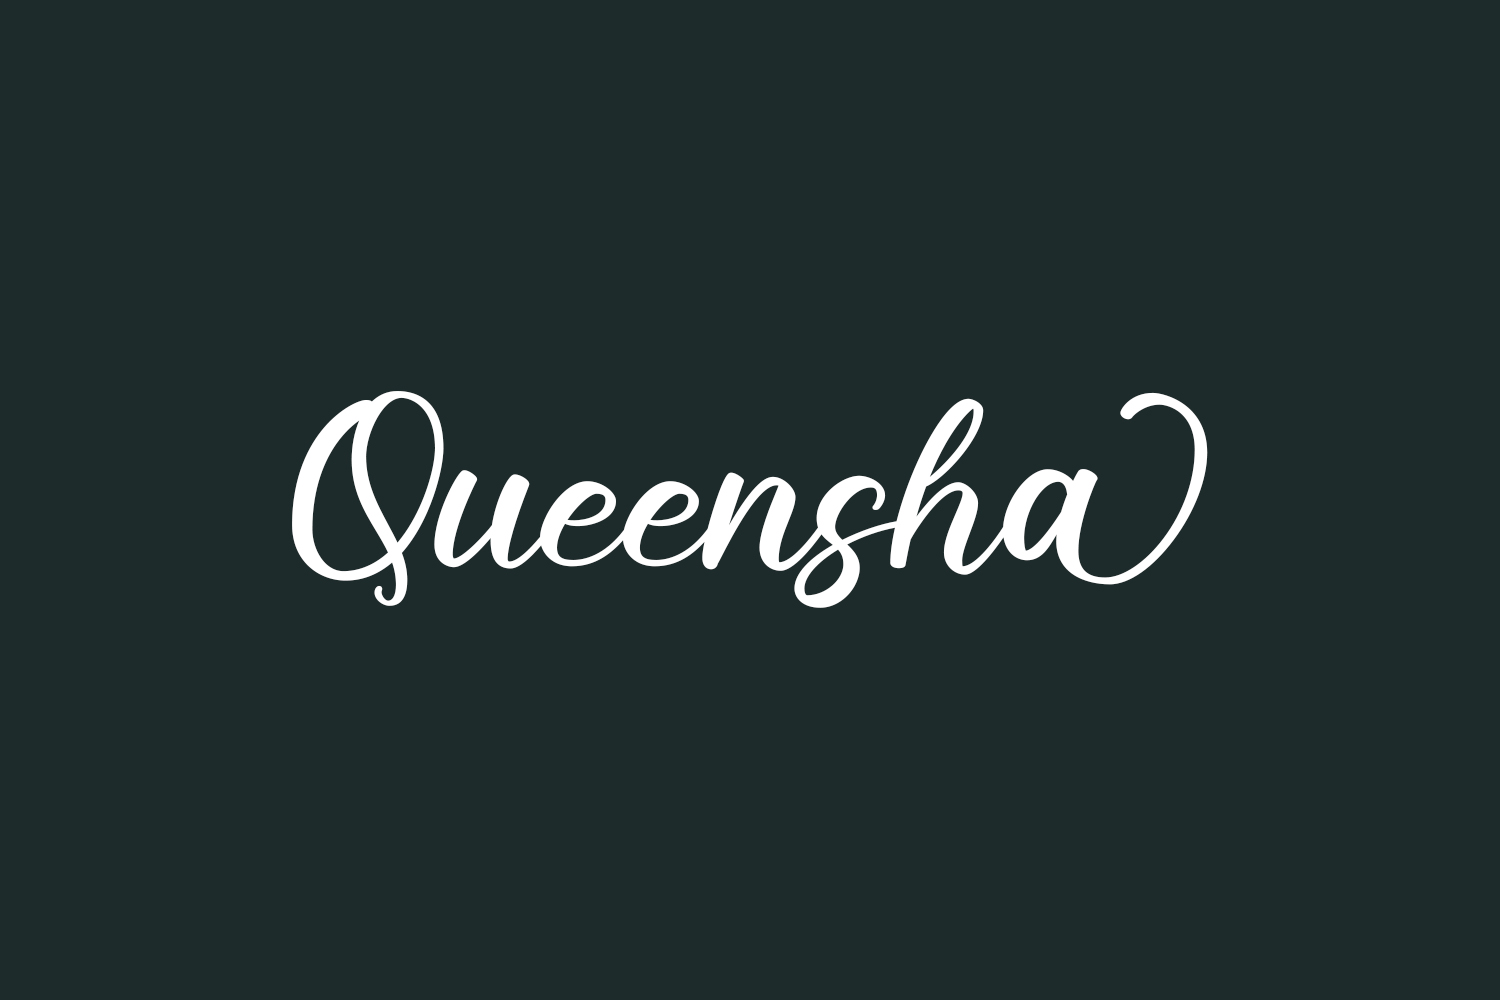 Queensha Free Font